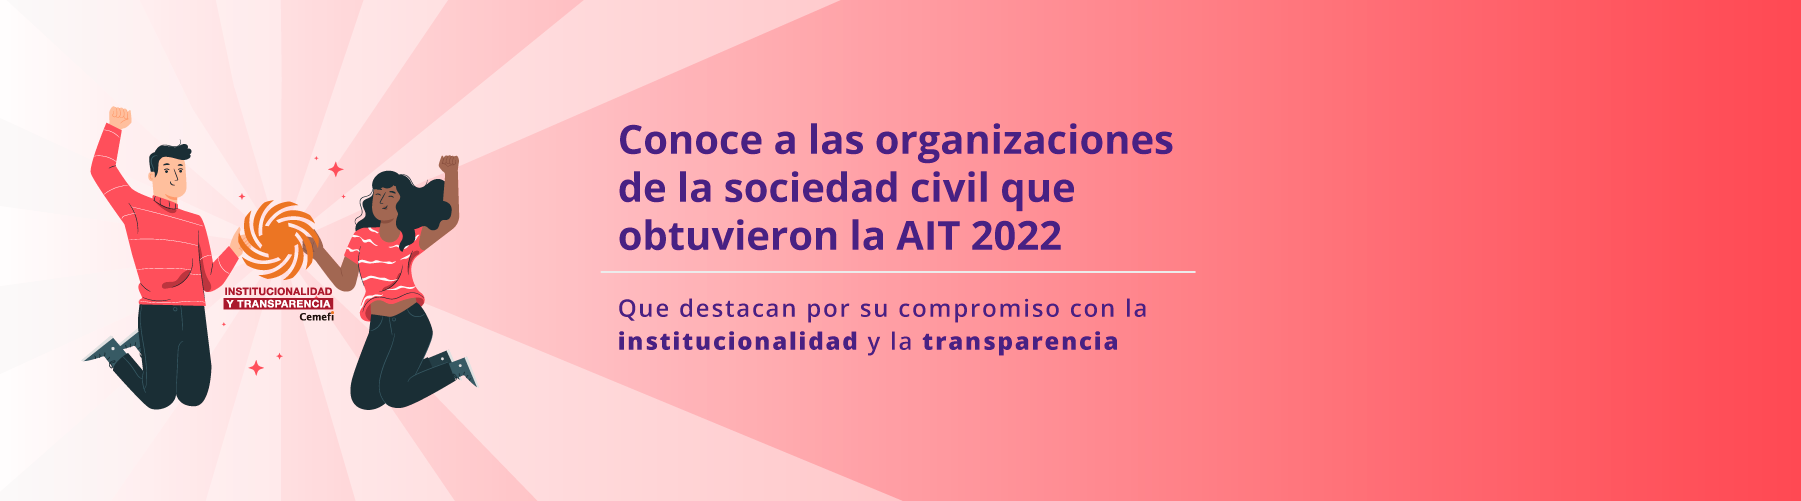 Conoce a las organizaciones de la sociedad civil que obtuvieron la AIT 2022. Que destacan por su compromiso con la institucionalidad y la transparencia.